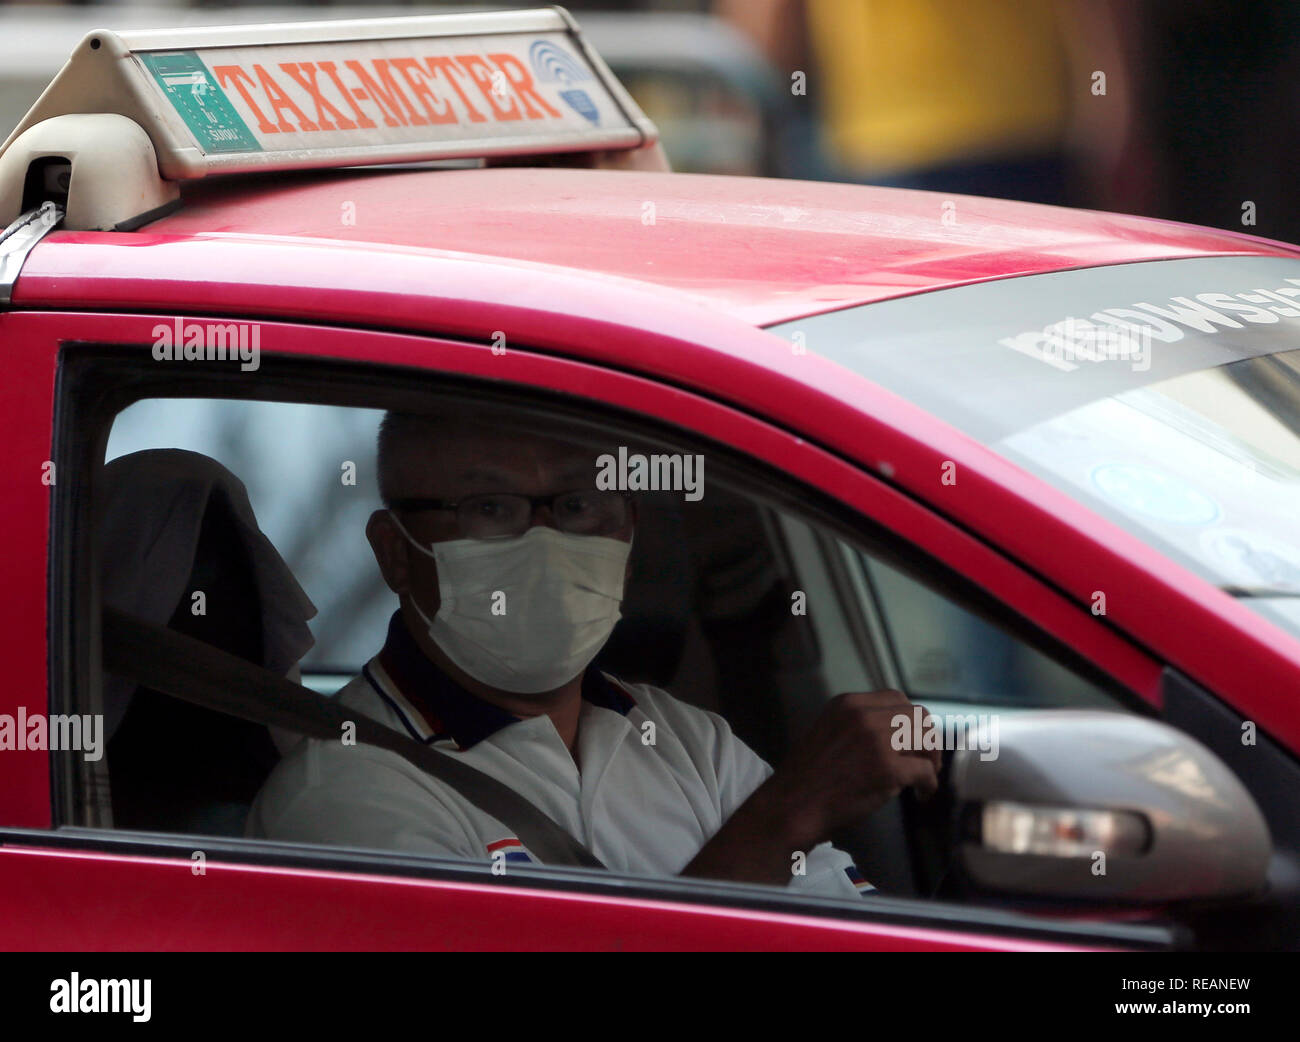 Un chauffeur de taxi à porter un masque lors d'une mauvaise qualité de l'air journée à Bangkok. La pollution de l'air du Bangkok aggravé la crise aujourd'hui, comme prévu, avec plusieurs endroits le long des routes principales et 16 autres régions faisant état des niveaux dangereux de PM2,5, les particules en suspension dans l'air dangereuse pour la santé d'2,5 microns ou moins de diamètre. Banque D'Images